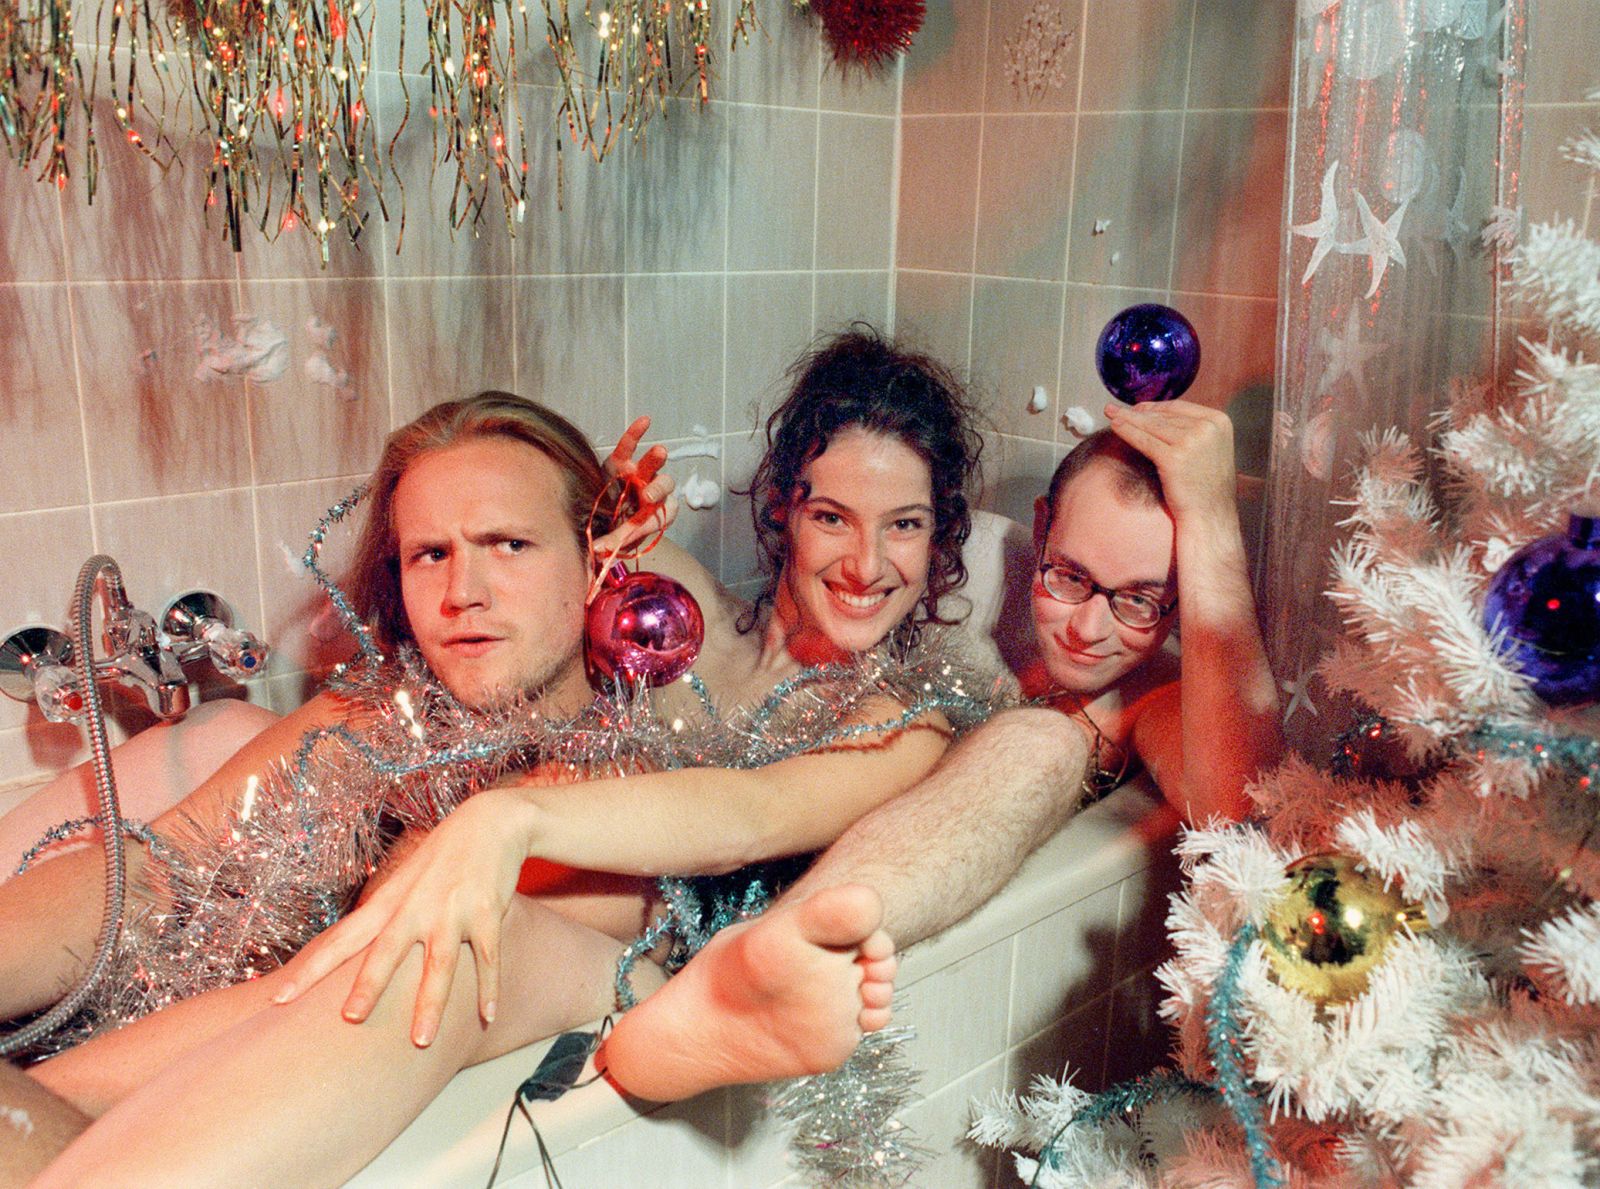 Klaus Beimer, Suzanne Richter und Philipp Sperling nackt in einer Badewanne, die weihnachtlich dekoriert ist.